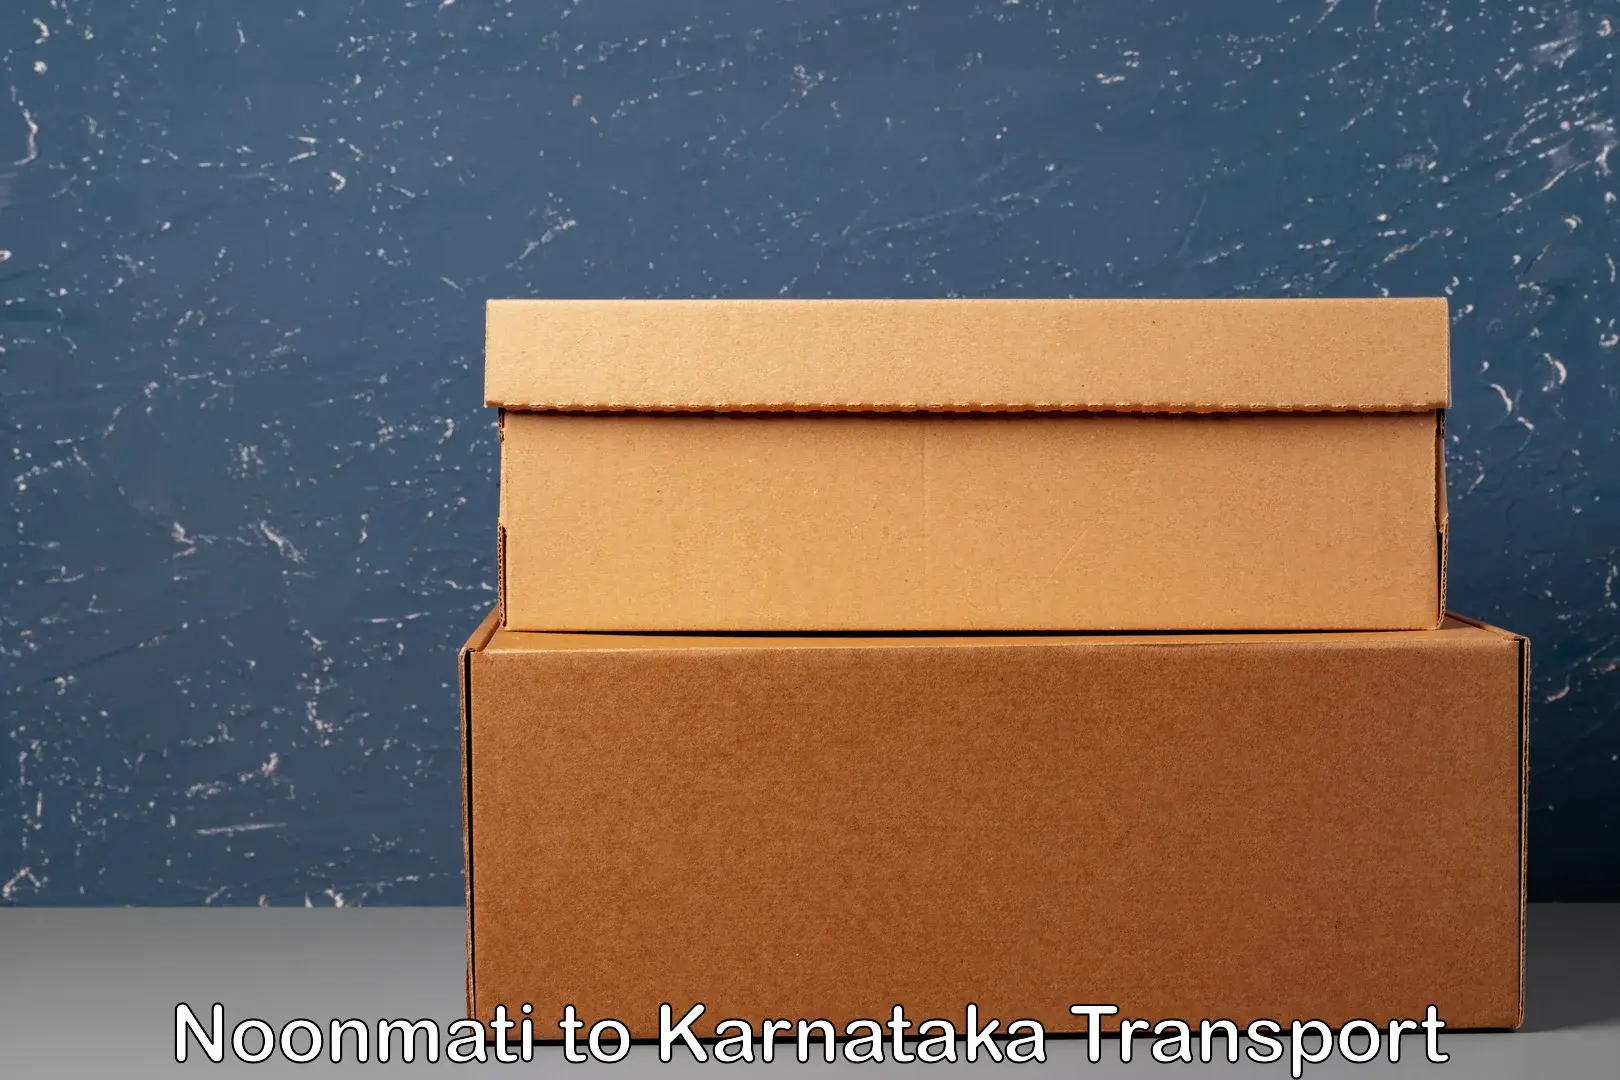 Express transport services Noonmati to Karnataka